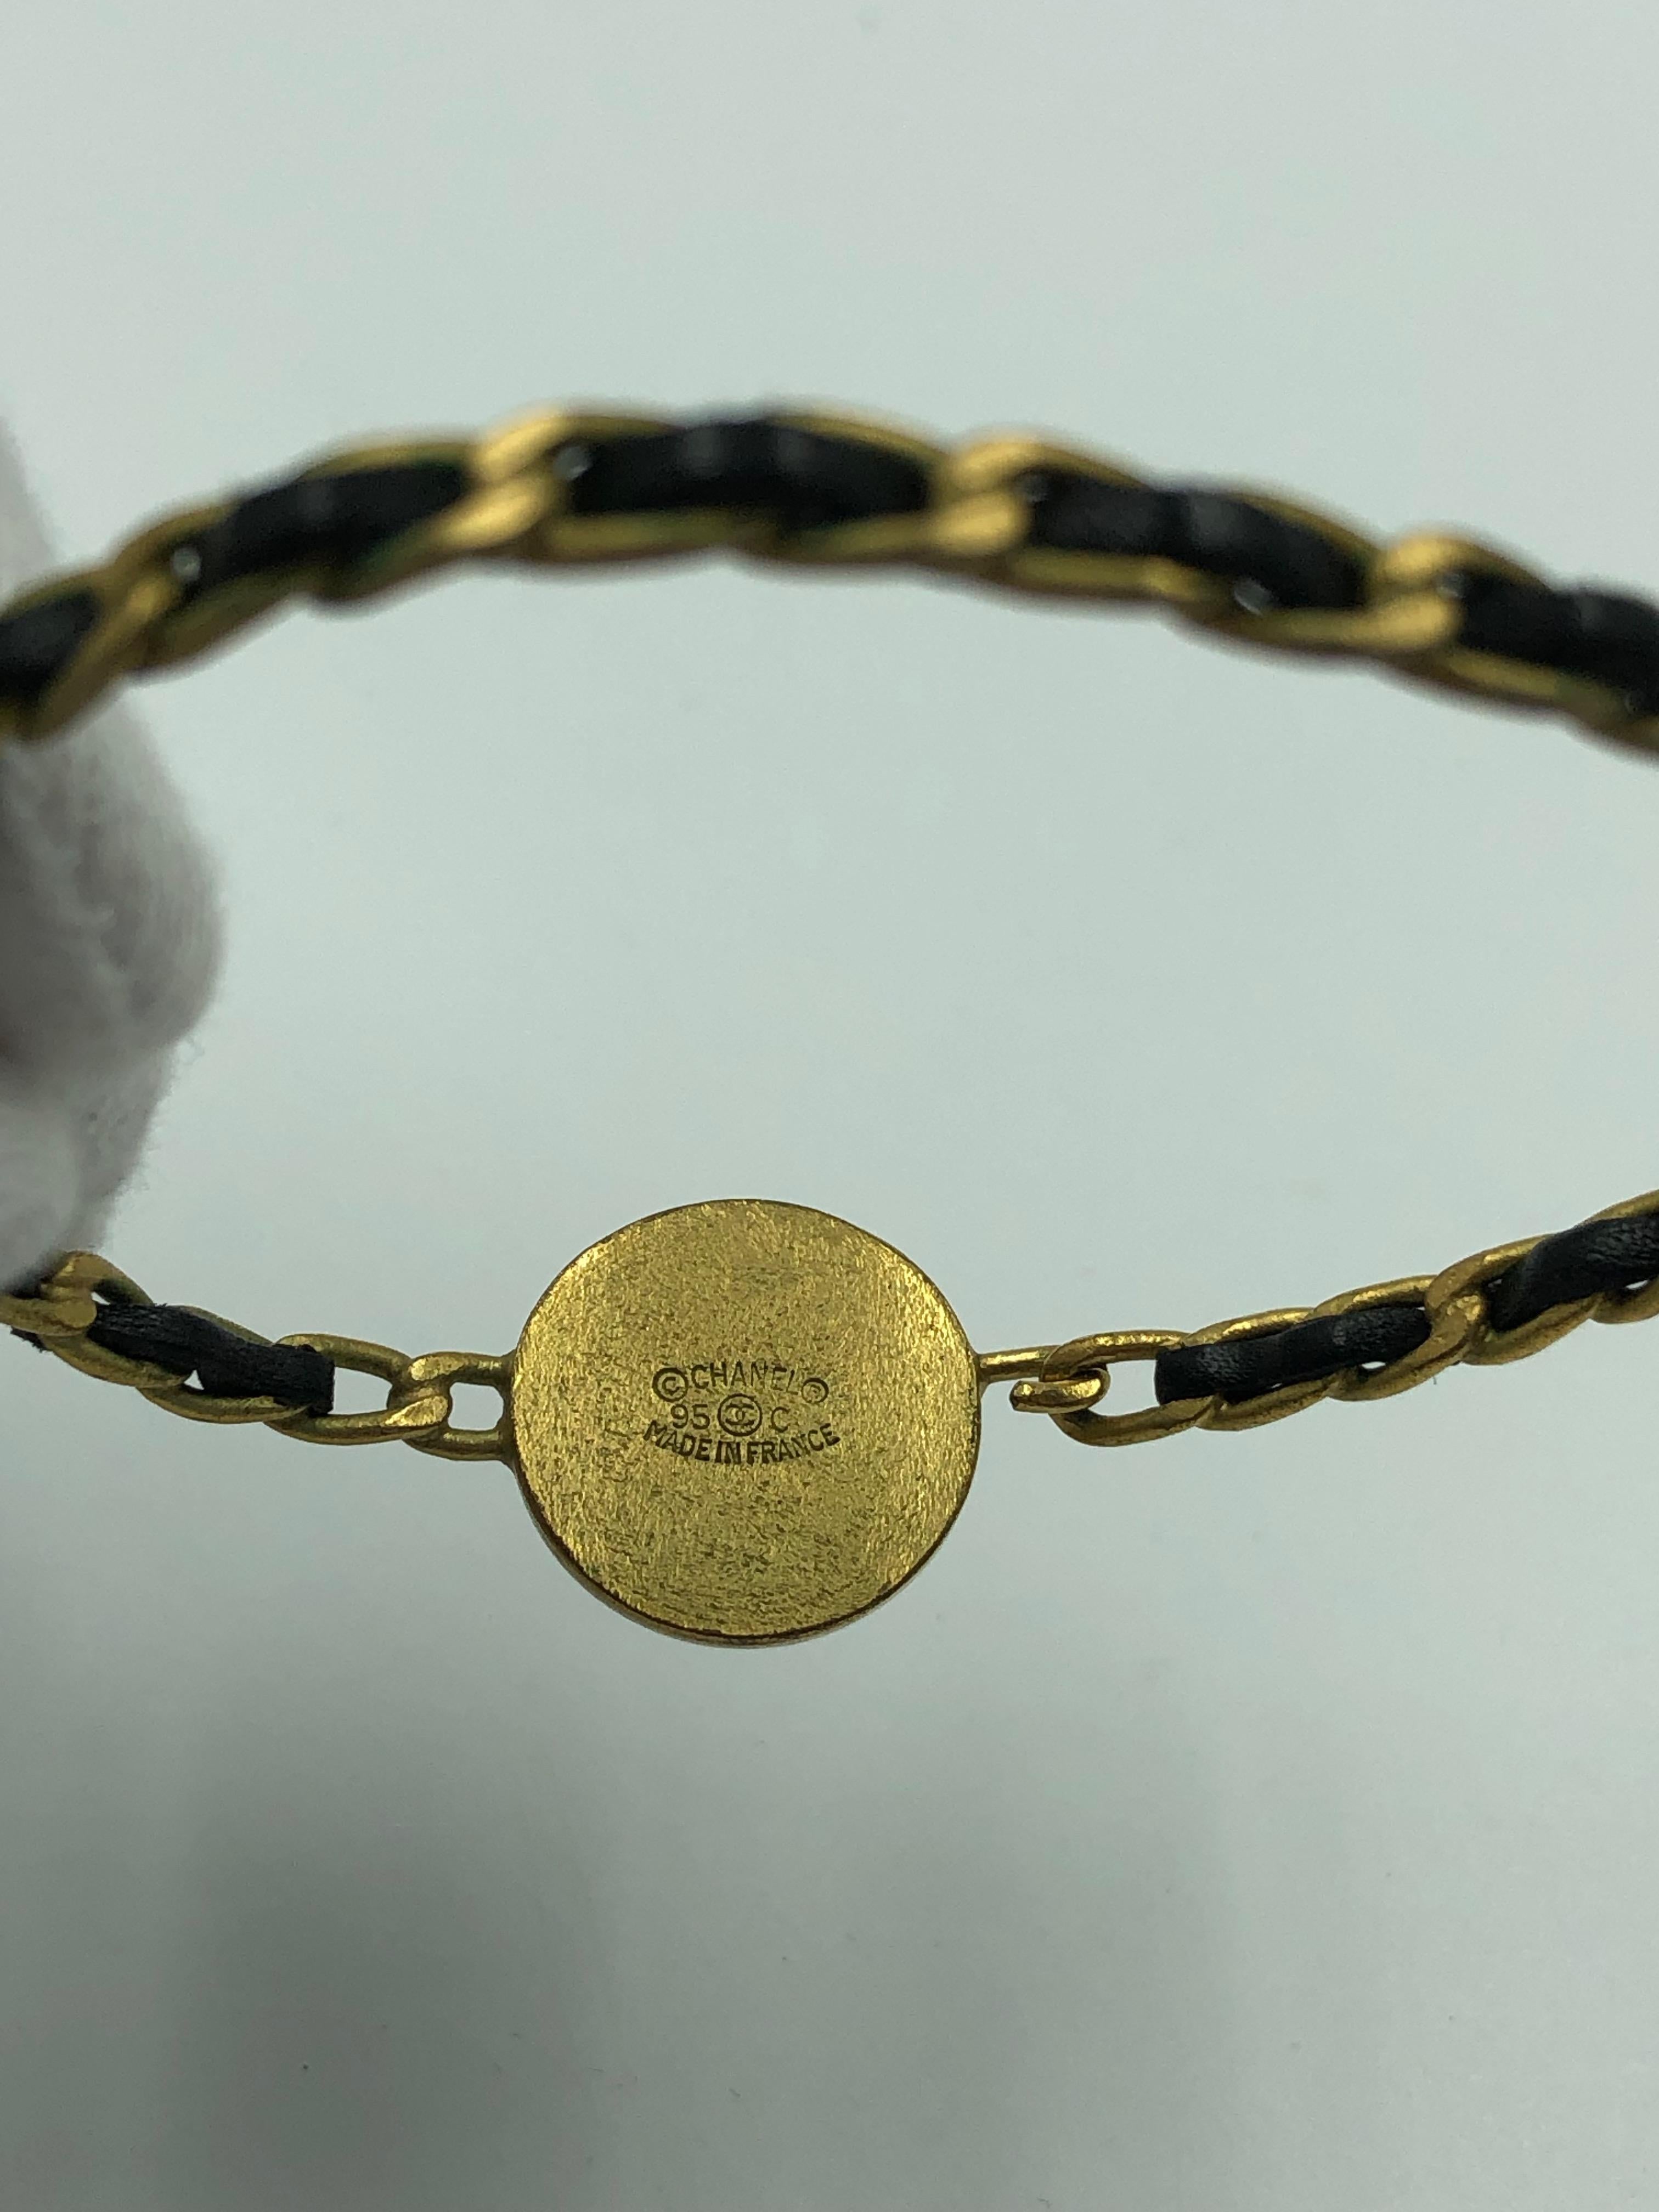 Chanel Rare Vintage Bracelet torsadé en métal doré et cuir avec fermoir médaillon Chanel

*MESURAGES*
Circonférence intérieure : 7